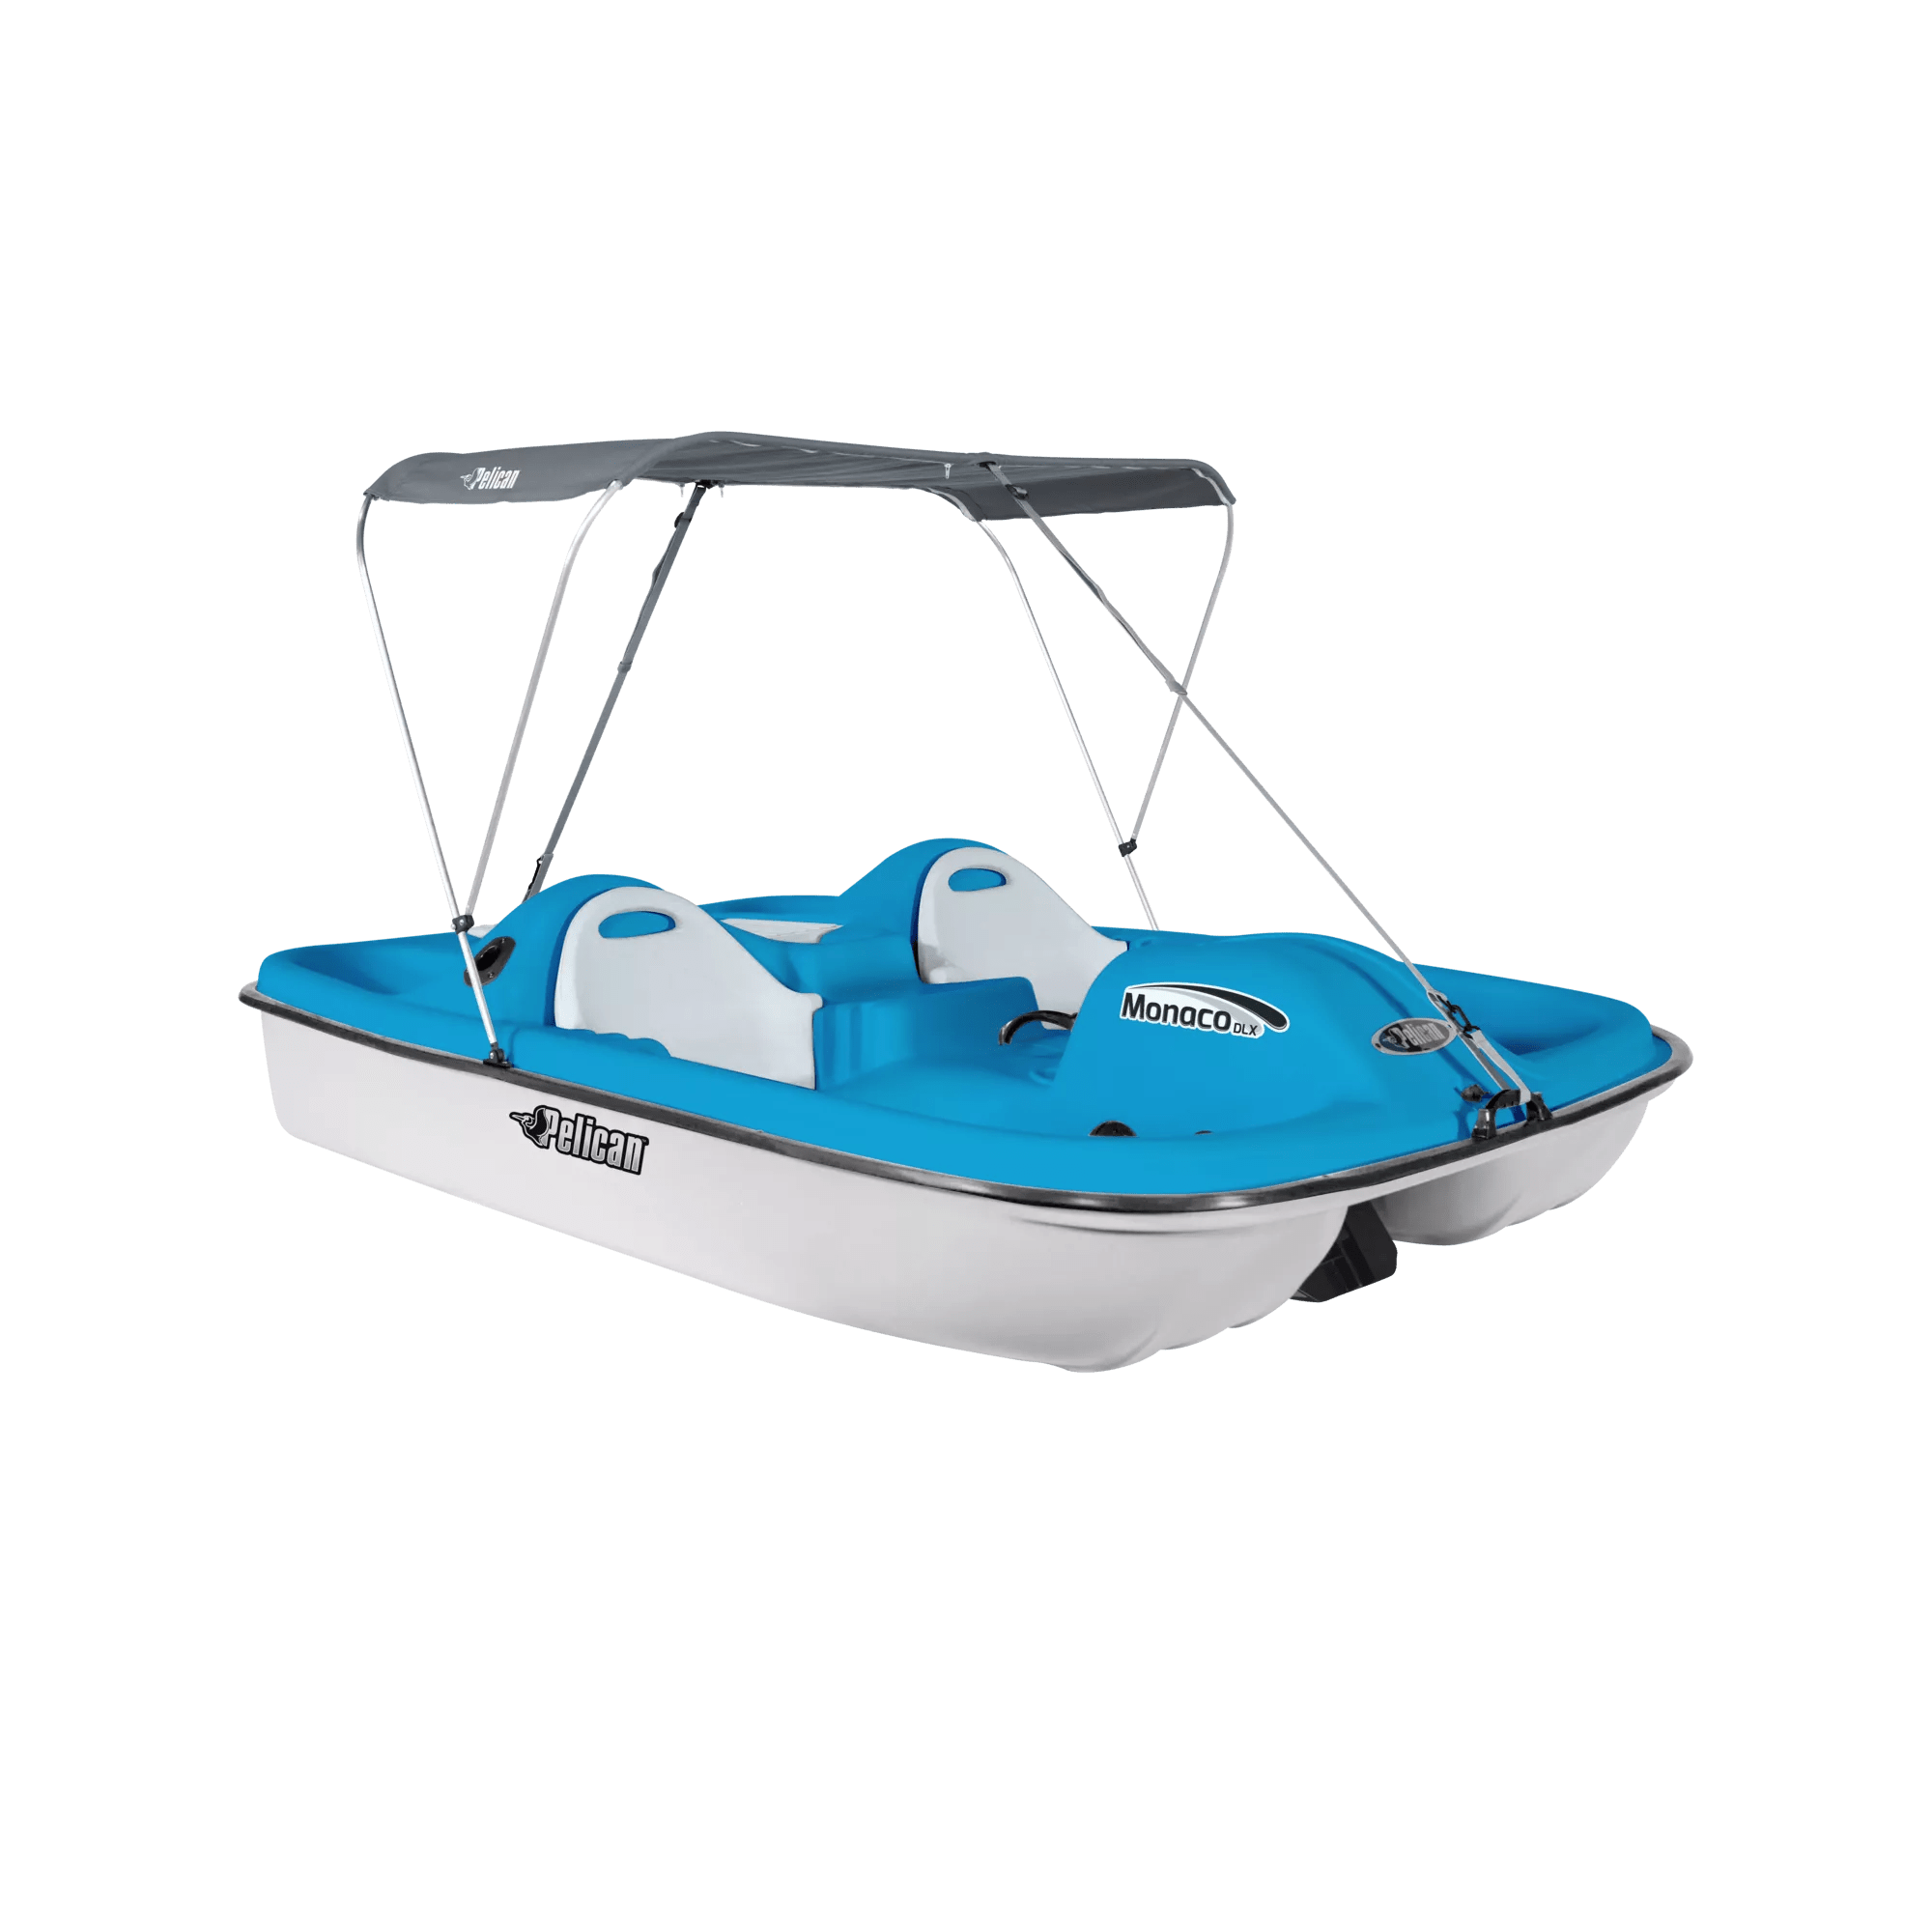 PELICAN - Monaco DLX Angler Pedal Boat - Blue - HHA25P203-00 - ISO 